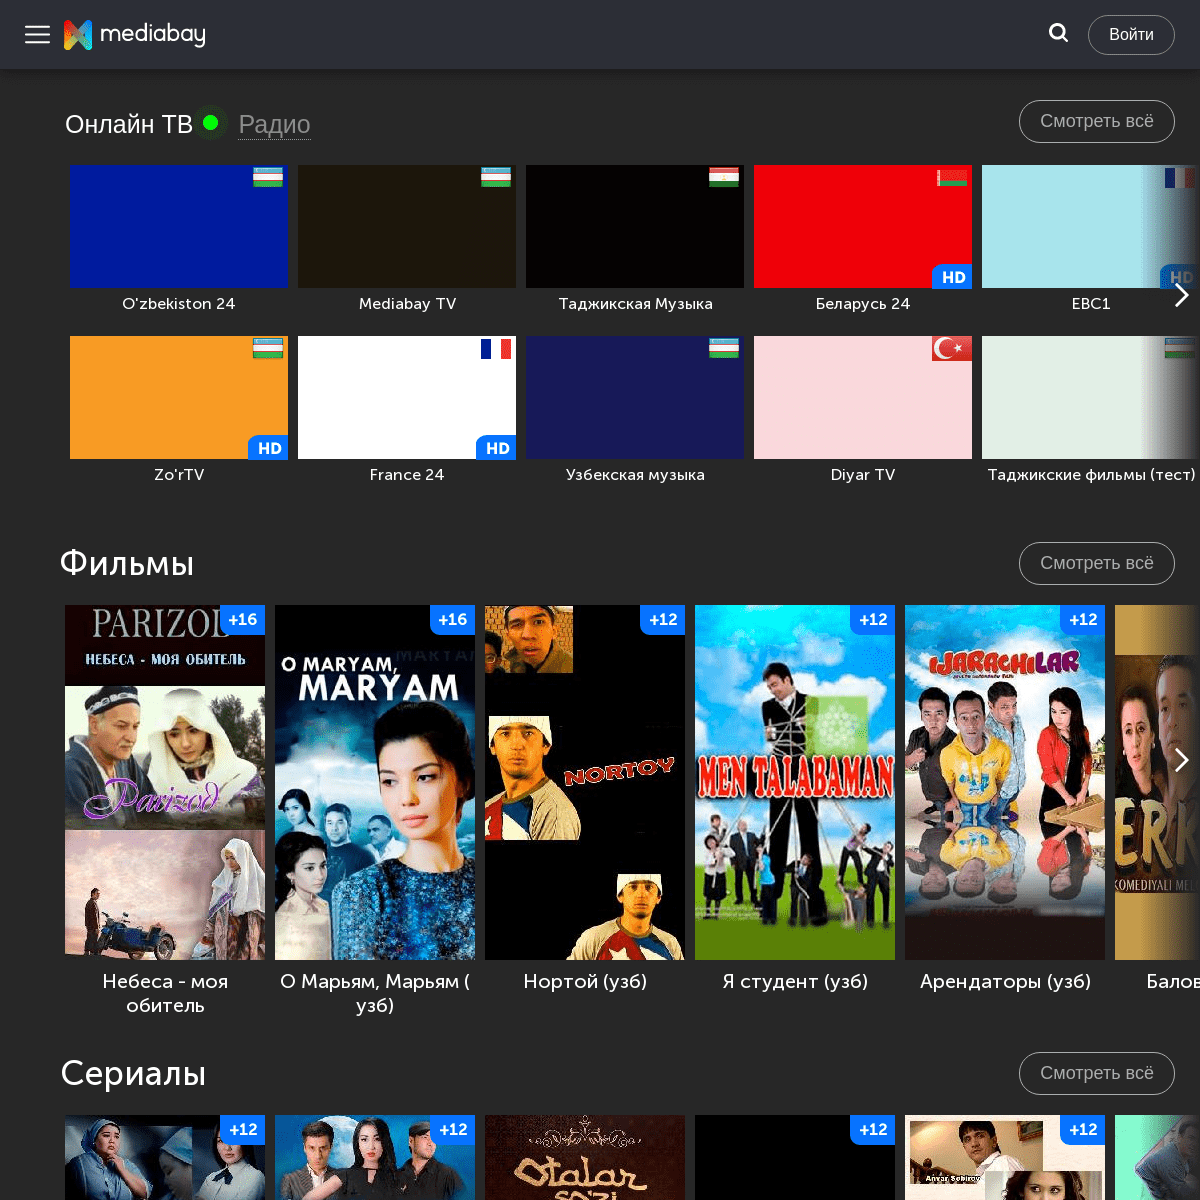 Mediabay.uz - Онлайн ТВ, фильмы, сериалы и многое другое